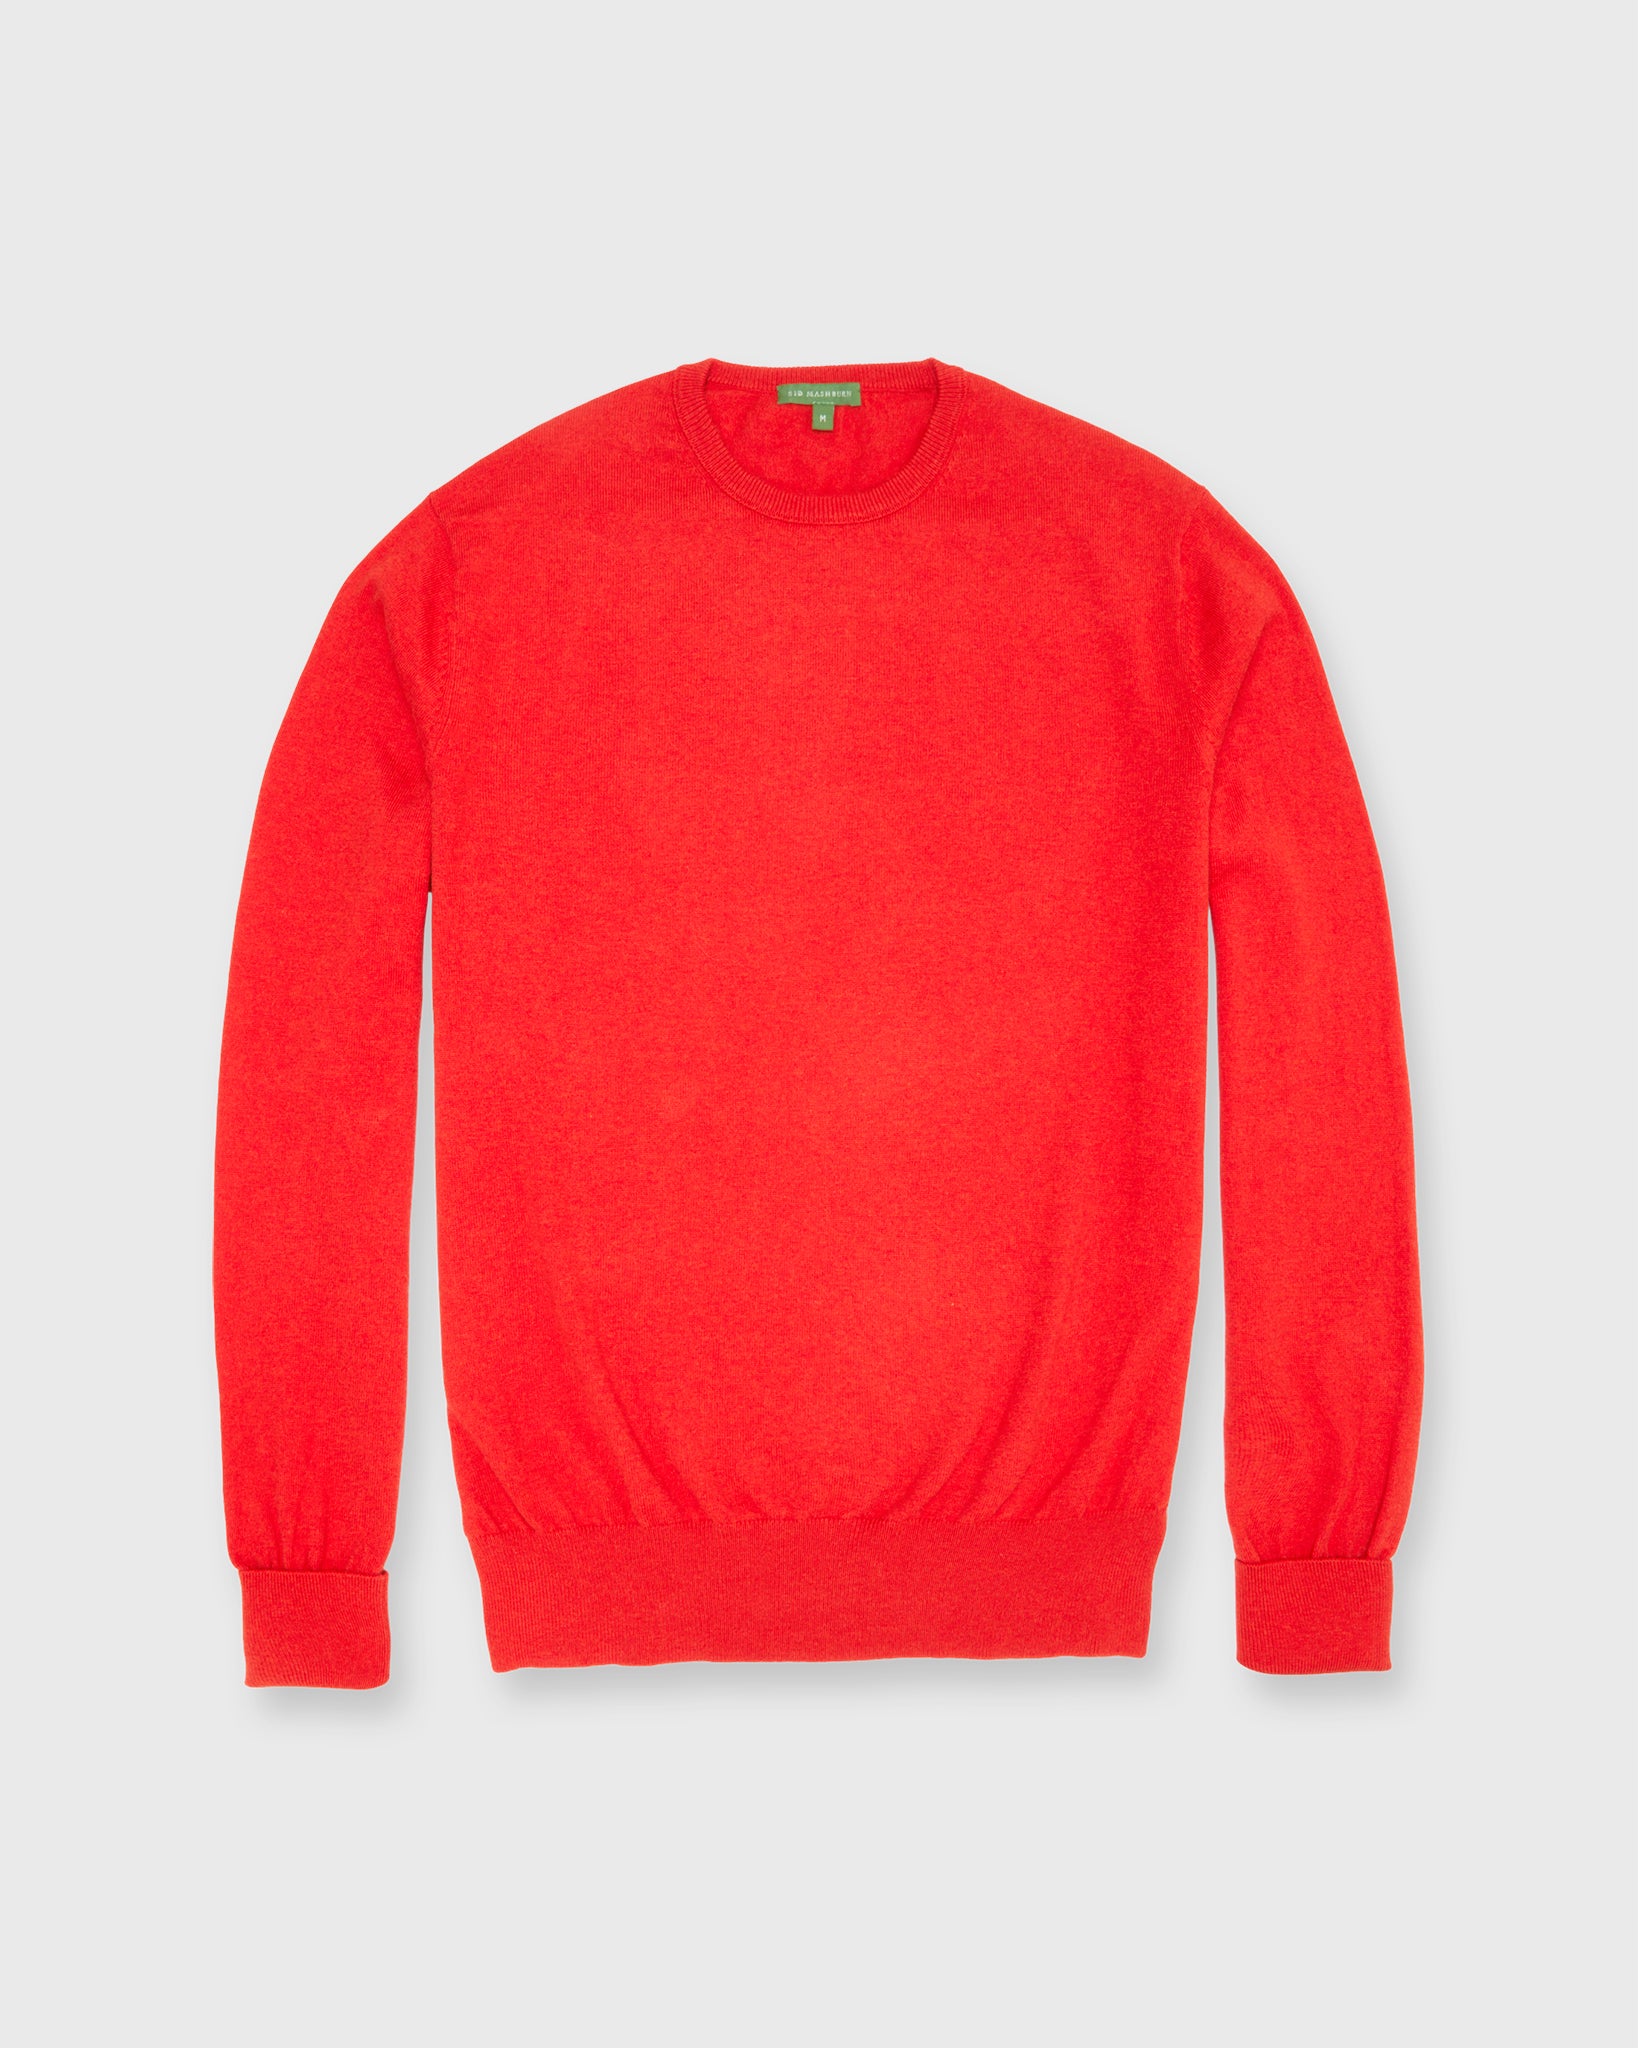 Casual Crewneck Sweater in Tomato Cotton/Cashmere